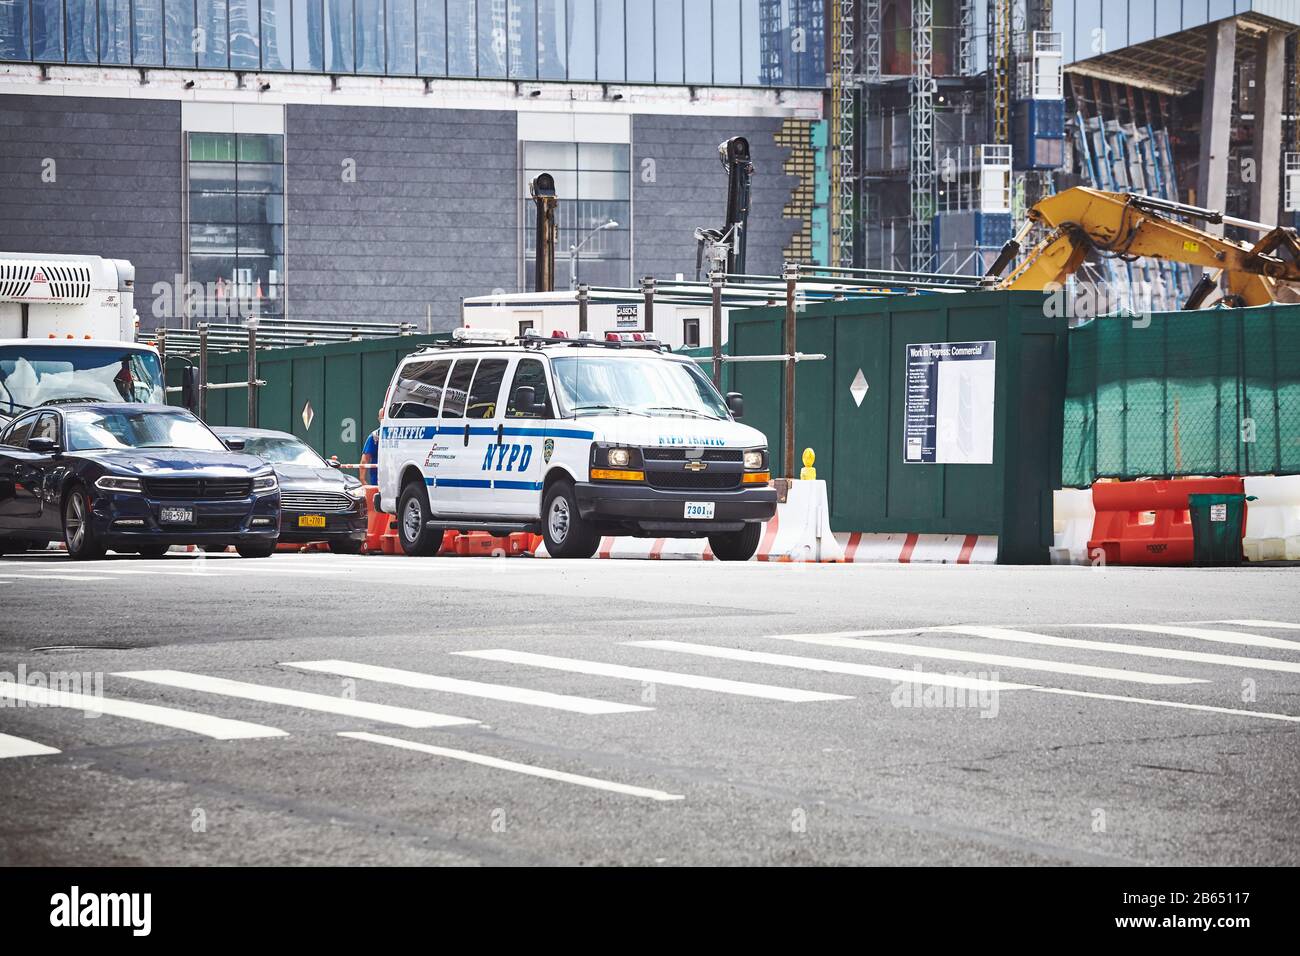 New York City, USA - 28. Juni 2018: NYPD-Verkehrsfahrzeug auf einer Straße der hell's Kitchen Nachbarschaft von Manhattan. Stockfoto